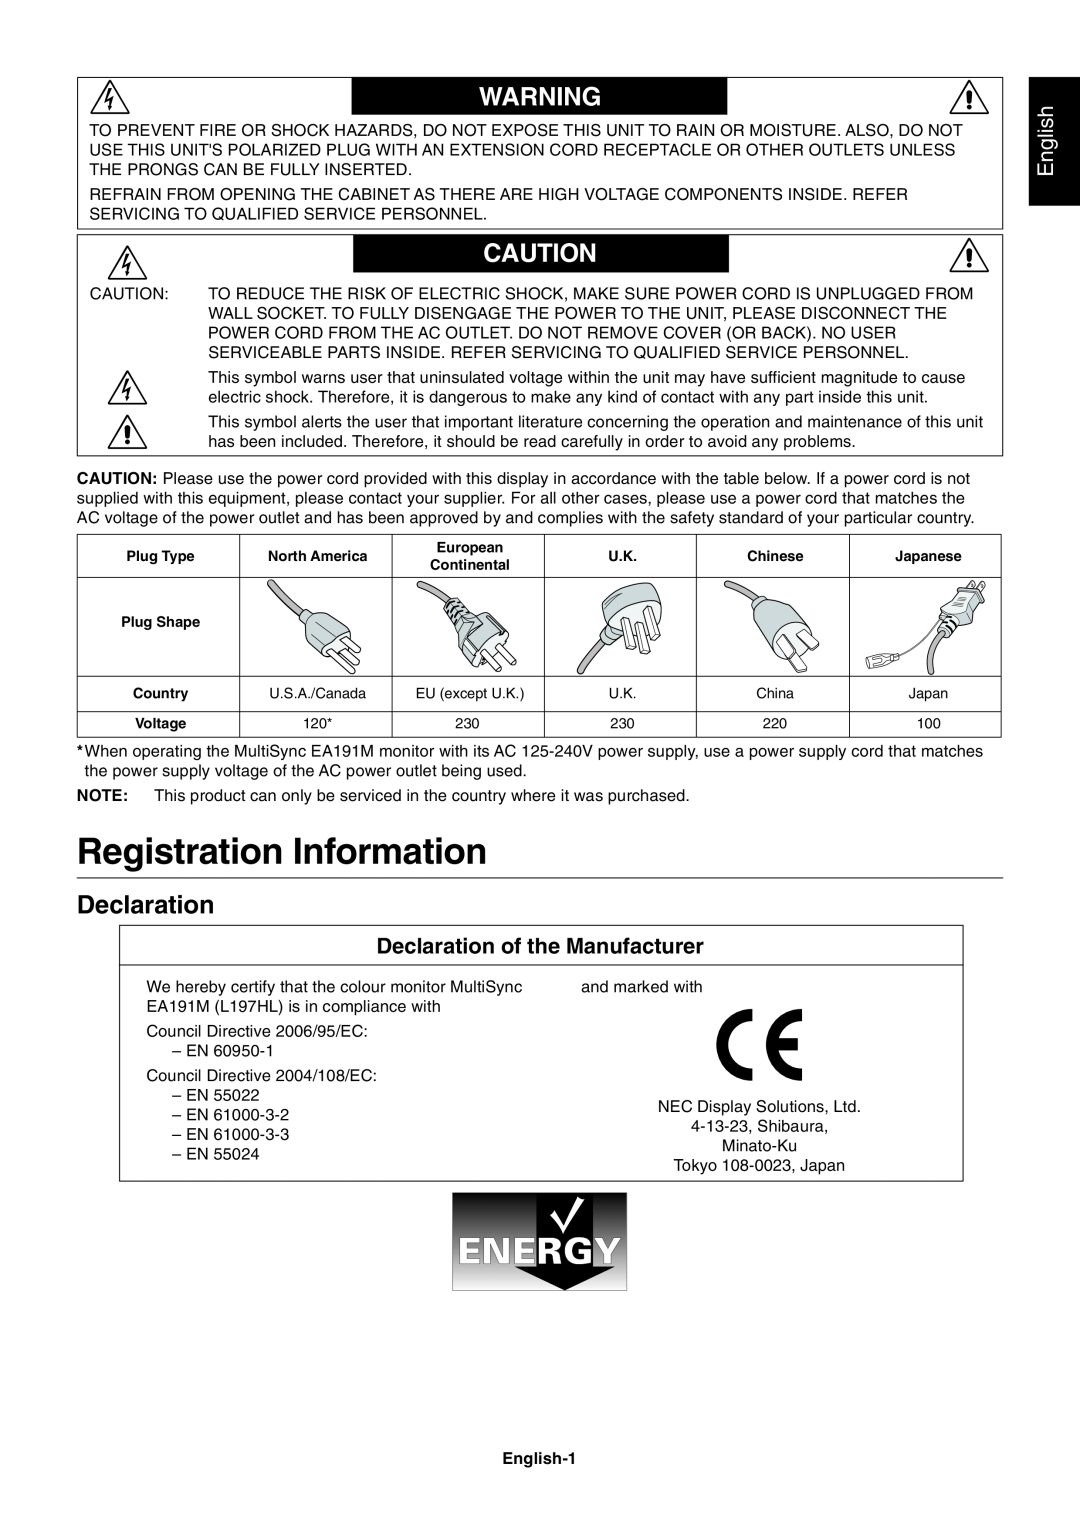 NEC EA191M-BK user manual Registration Information, Declaration of the Manufacturer, English-1 